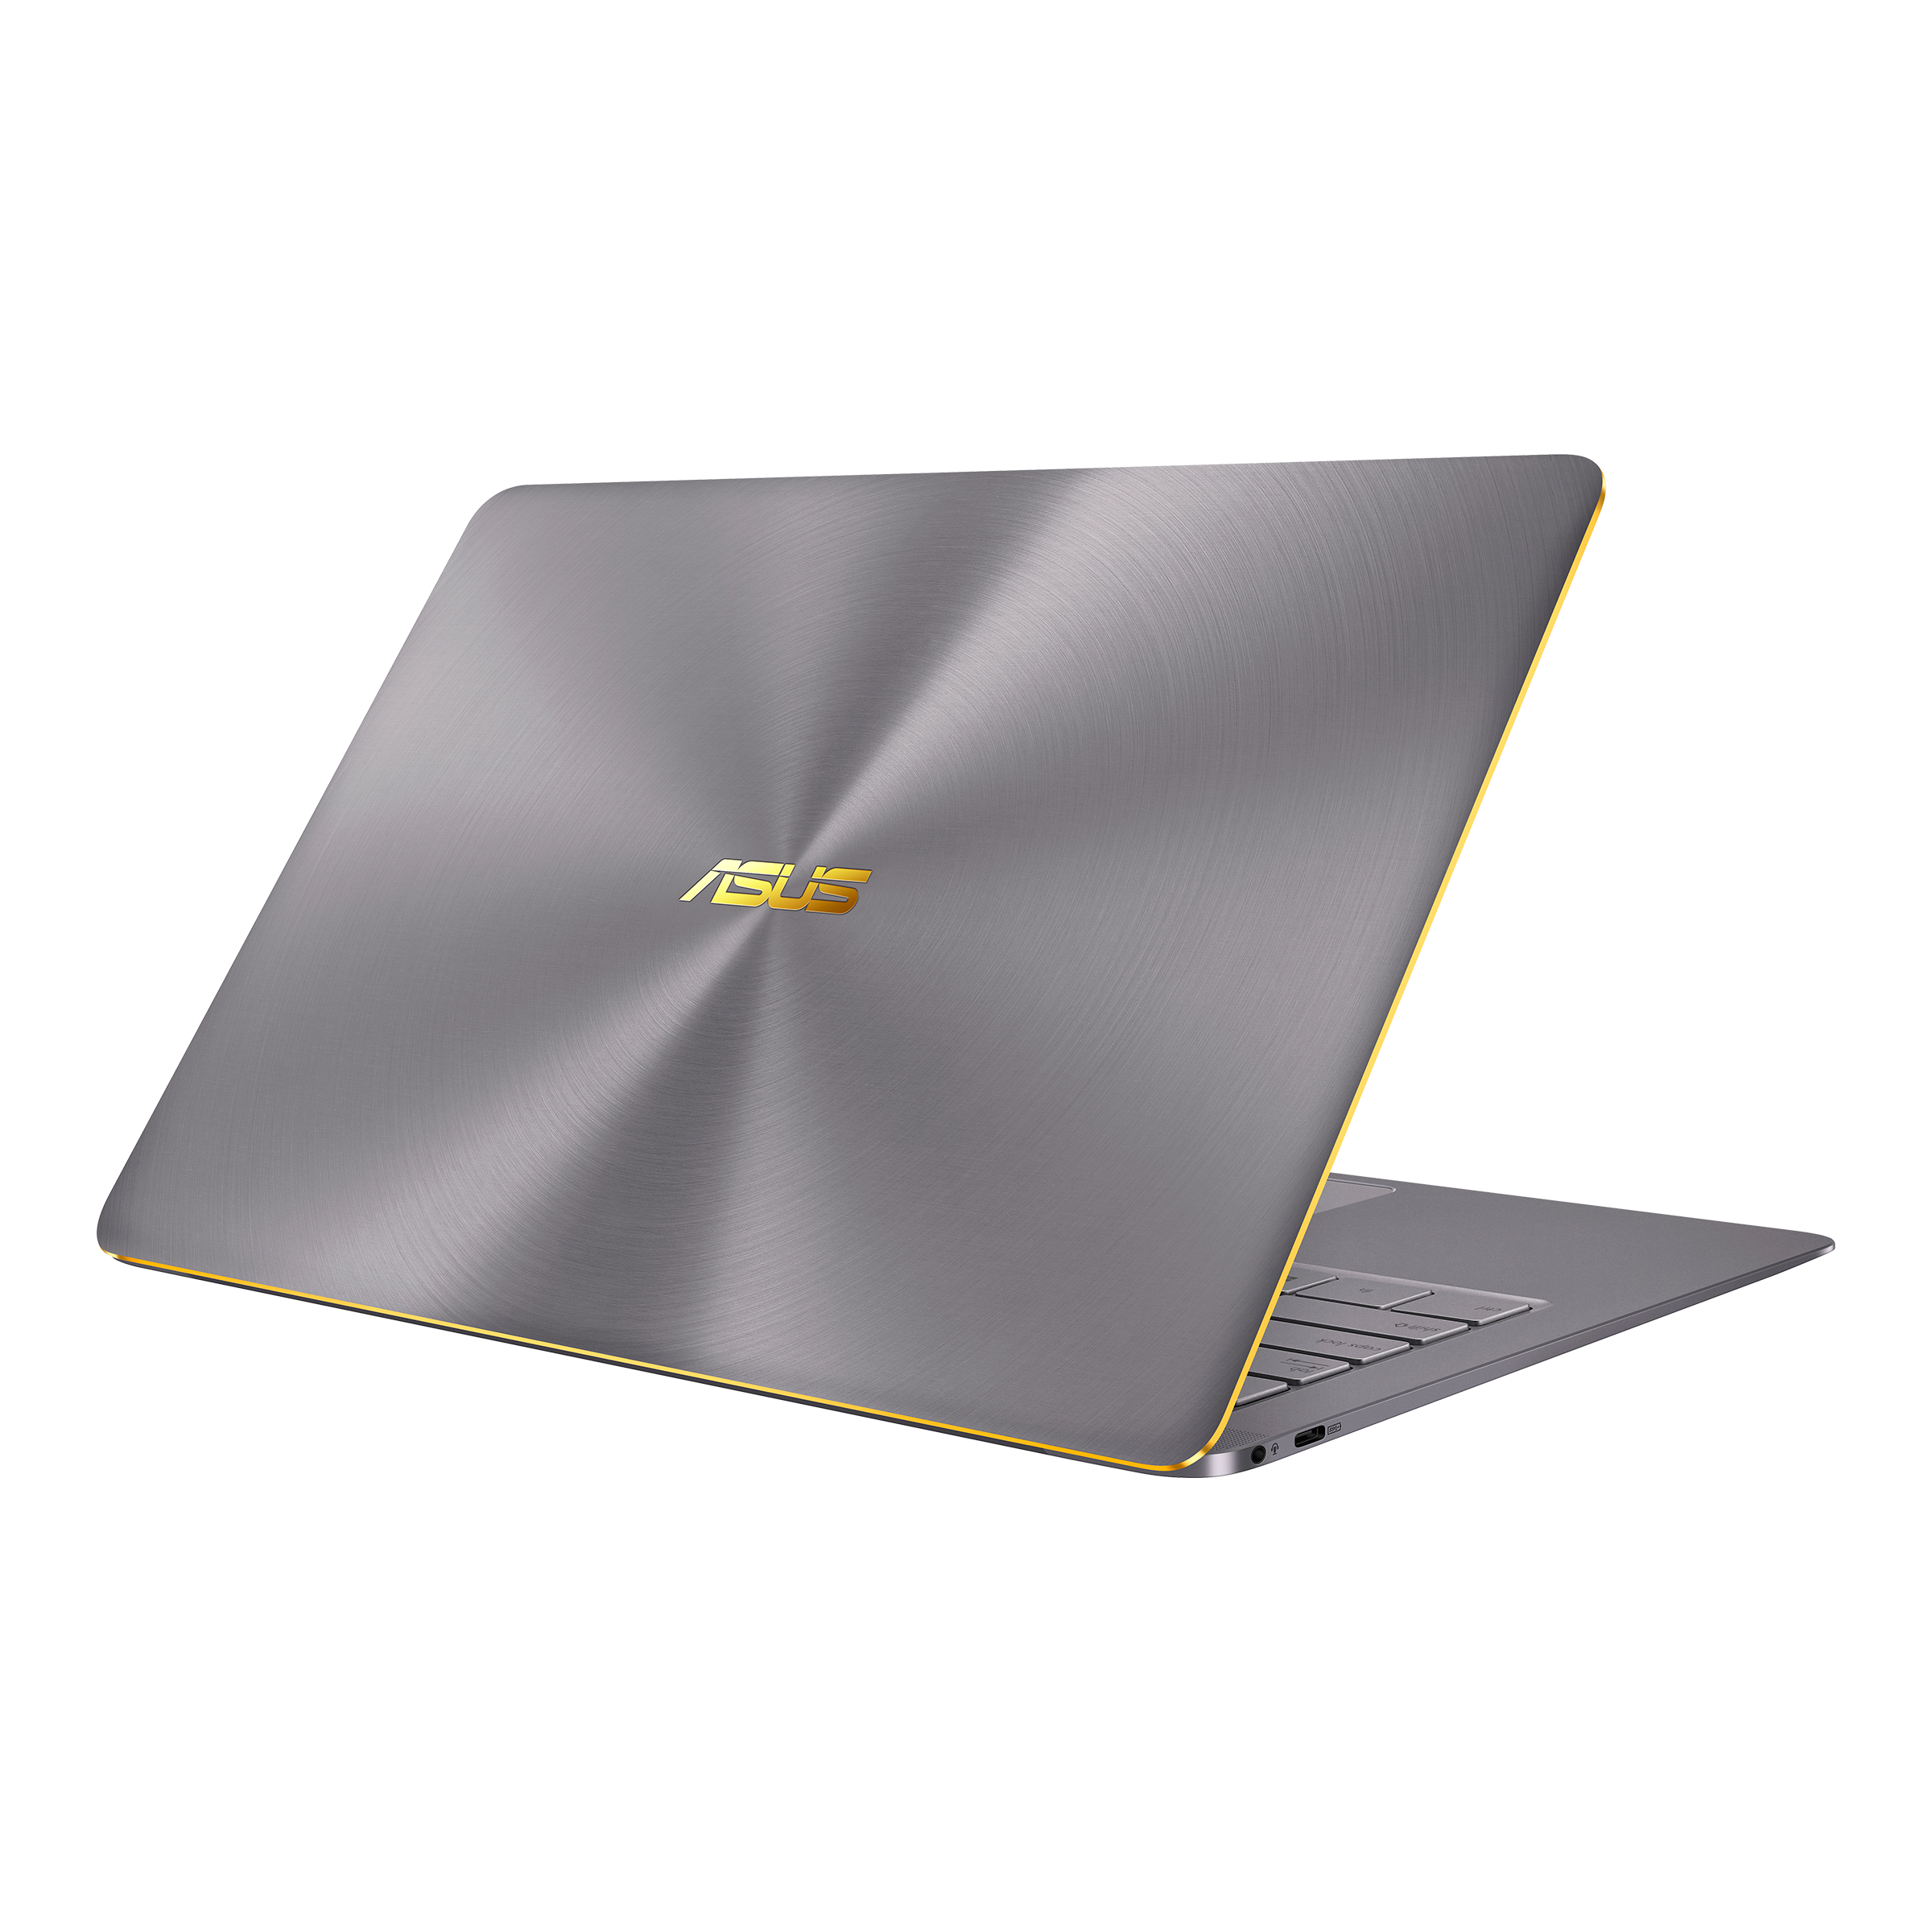 Asus zenbook 3. ASUS ZENBOOK ux490. ASUS ZENBOOK Deluxe 3. ASUS Ultrabook Core i7.